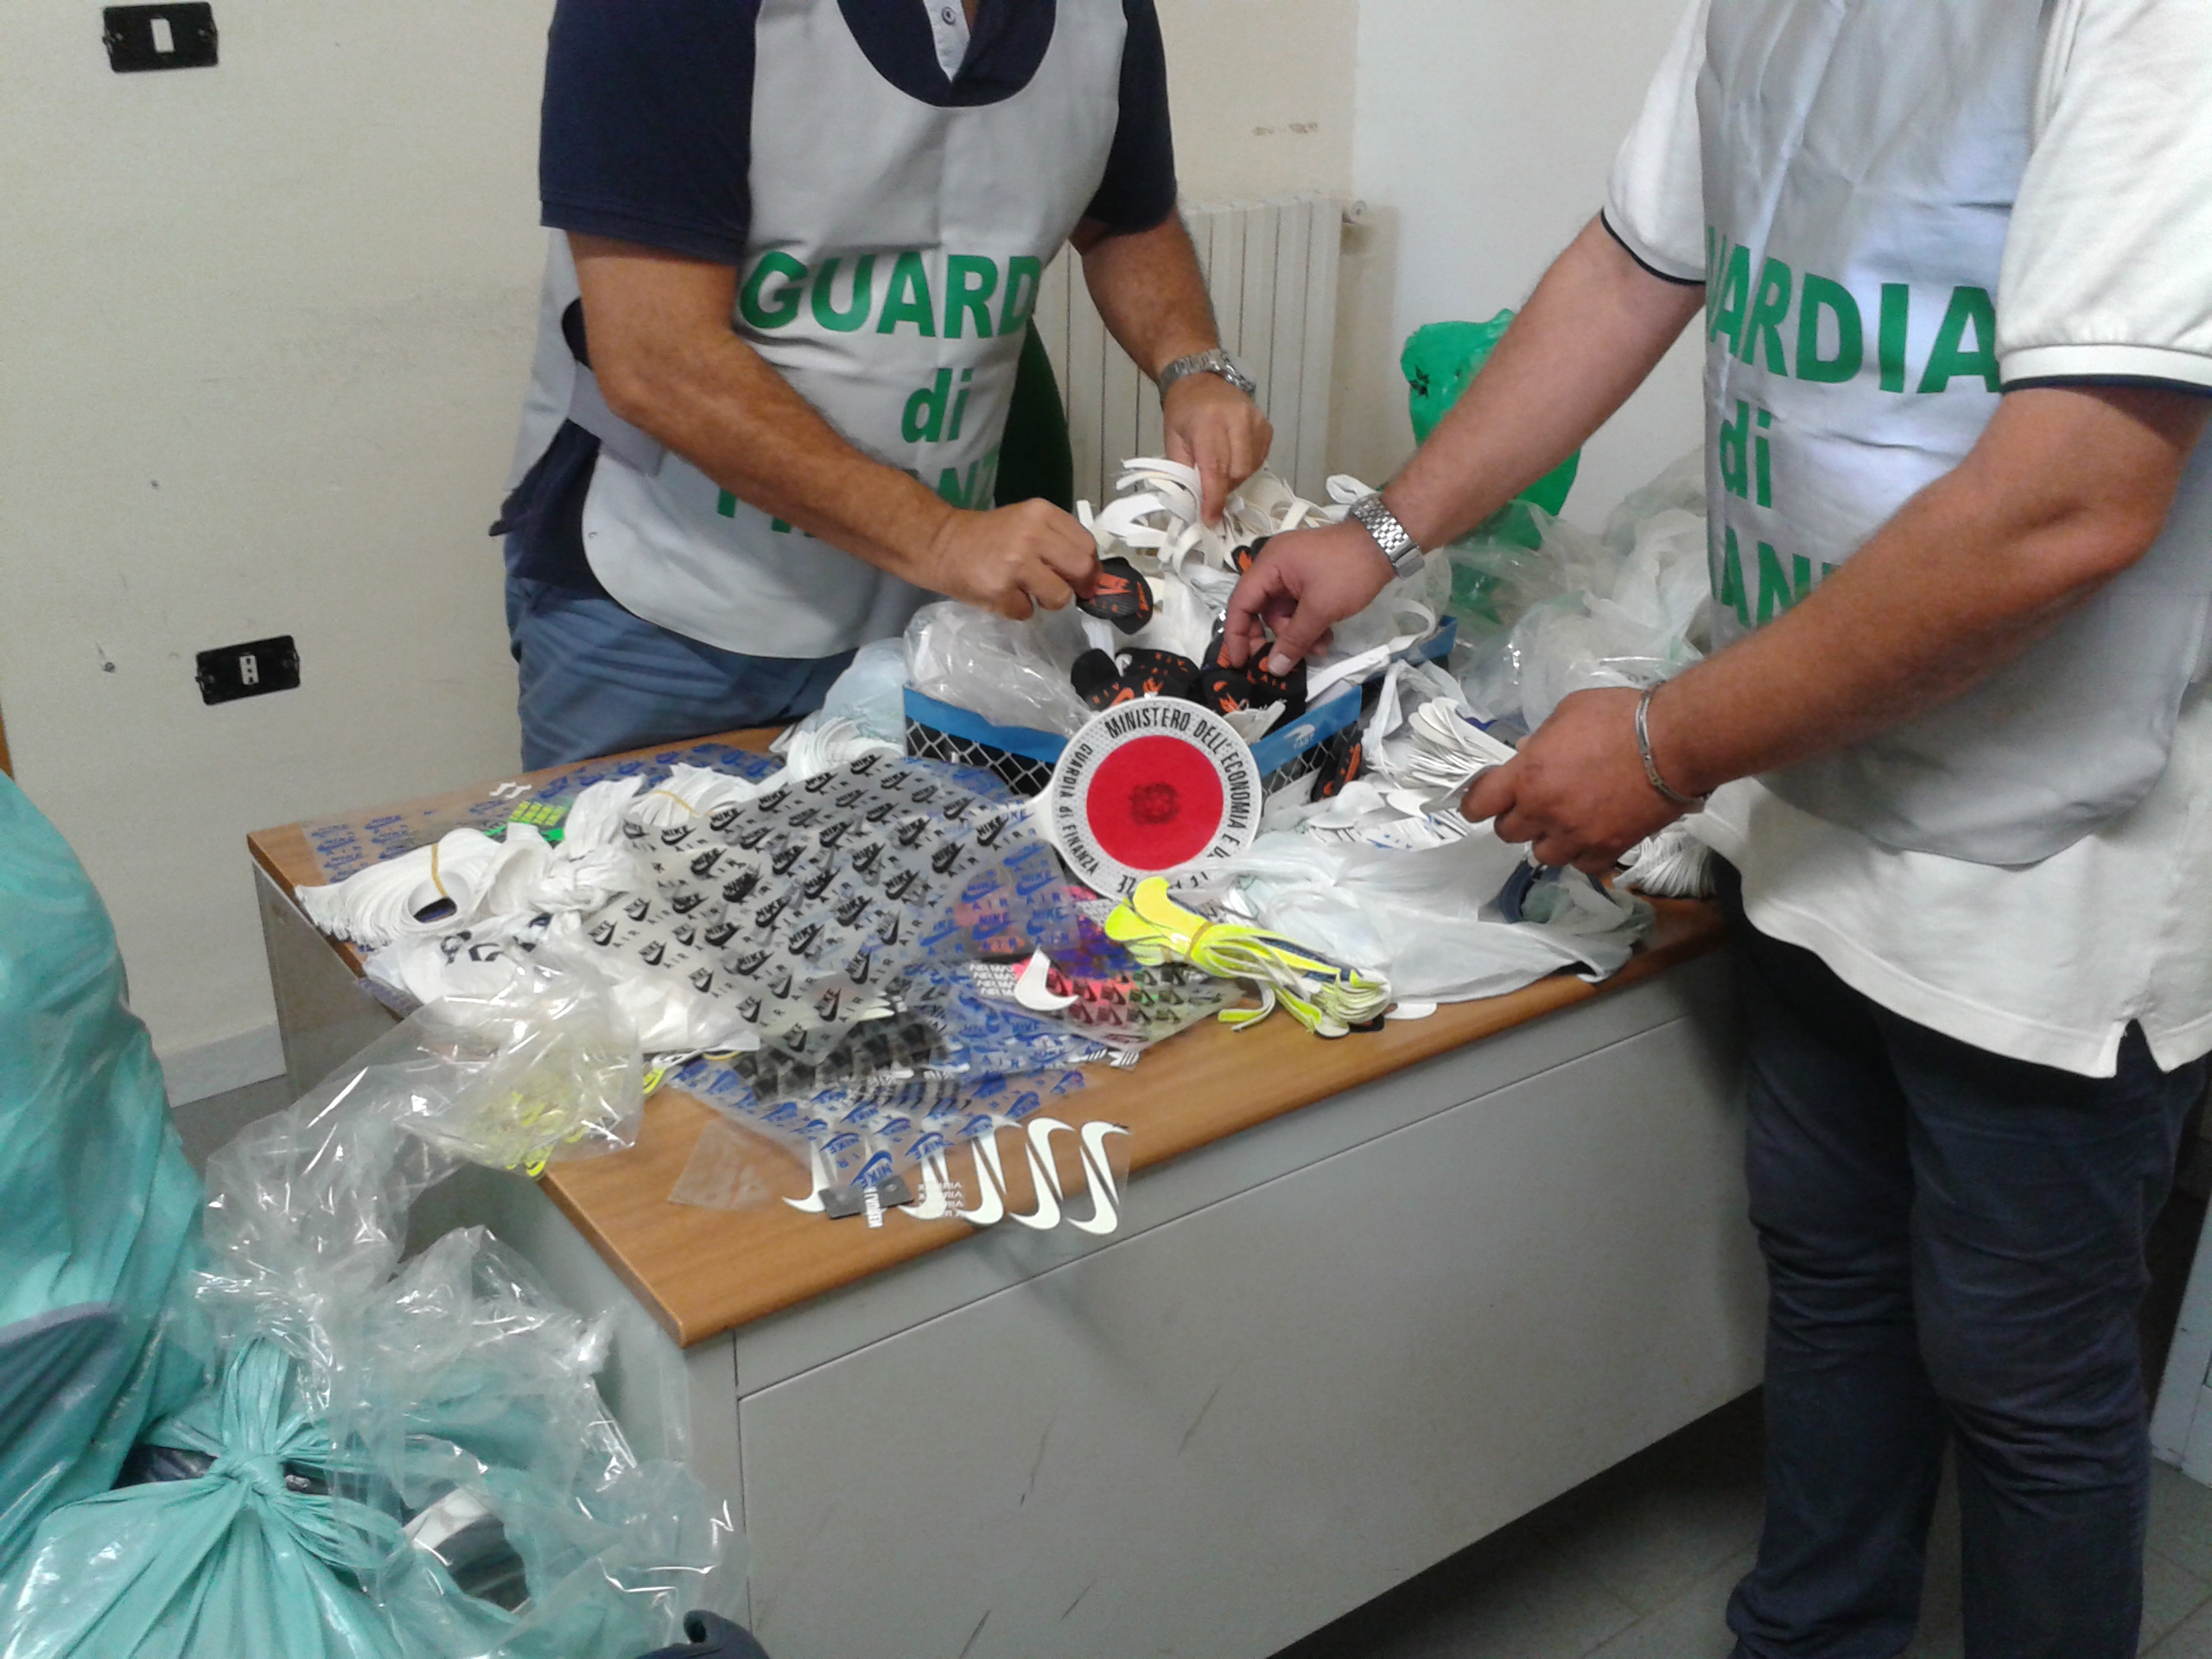  In Provincia di Caserta sequestrato deposito clandestino di prodotti contraffatti